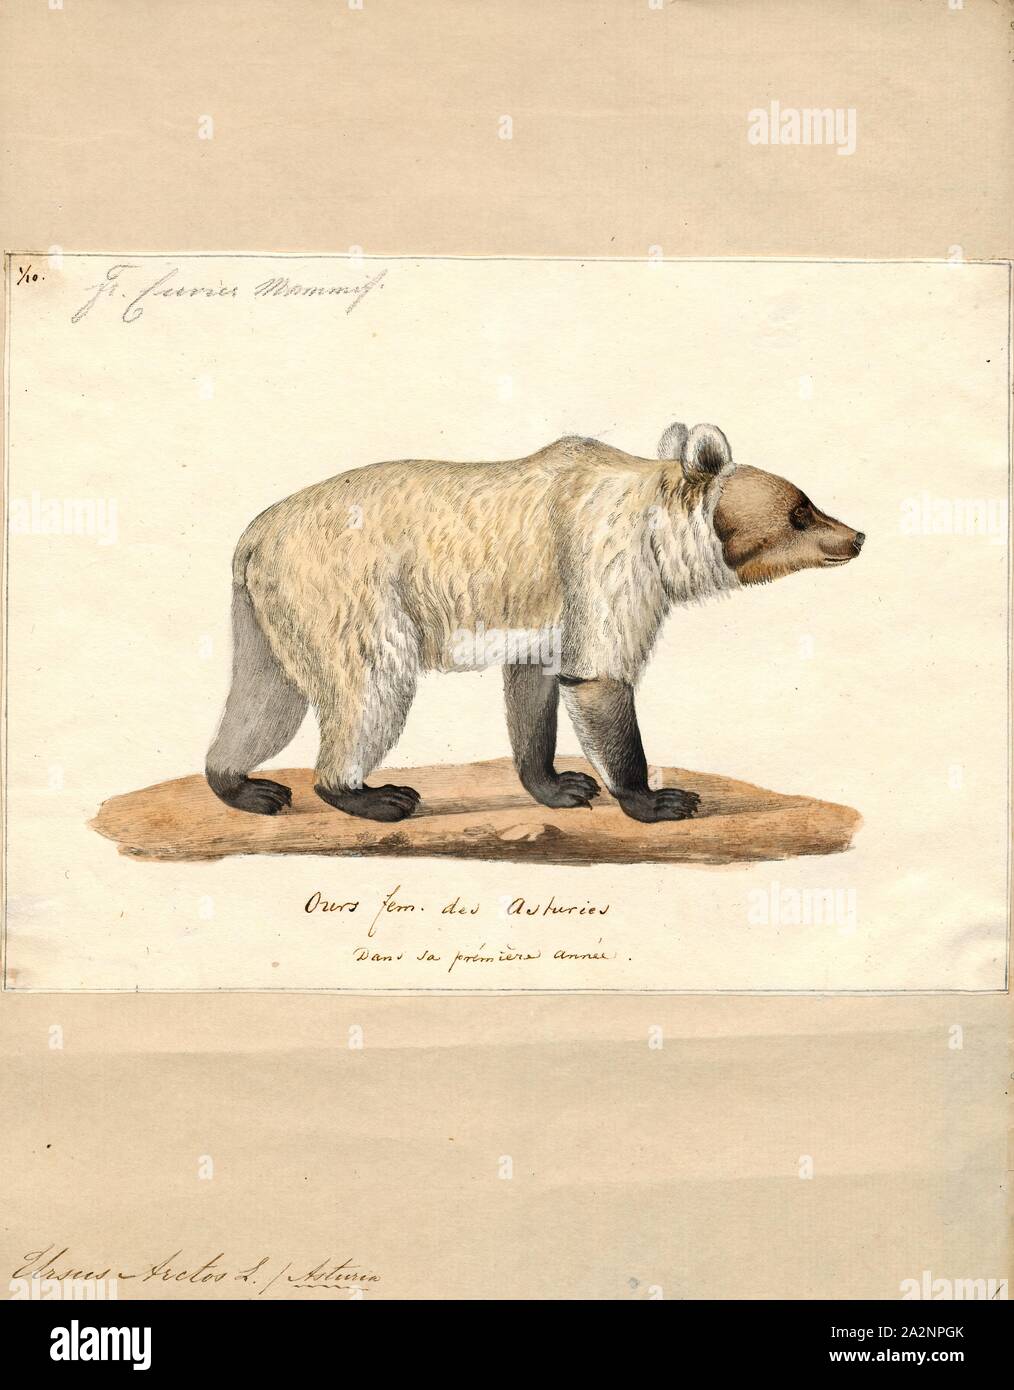 Ursus arctos, stampa l'orso bruno (Ursus arctos) è un orso che si trova in gran parte dell'Eurasia settentrionale e Nord America. In Nord America, le popolazioni di orso bruno sono spesso chiamati orsi grizzly. Si tratta di uno dei più grandi terrestre vivente membri dell Ordine Carnivora, rivaleggiava con dimensioni solo dal suo parente più vicino, l'orso polare (Ursus maritimus), che è molto meno di dimensione variabile e di dimensioni leggermente più grandi rispetto alla media., 1700-1880 Foto Stock